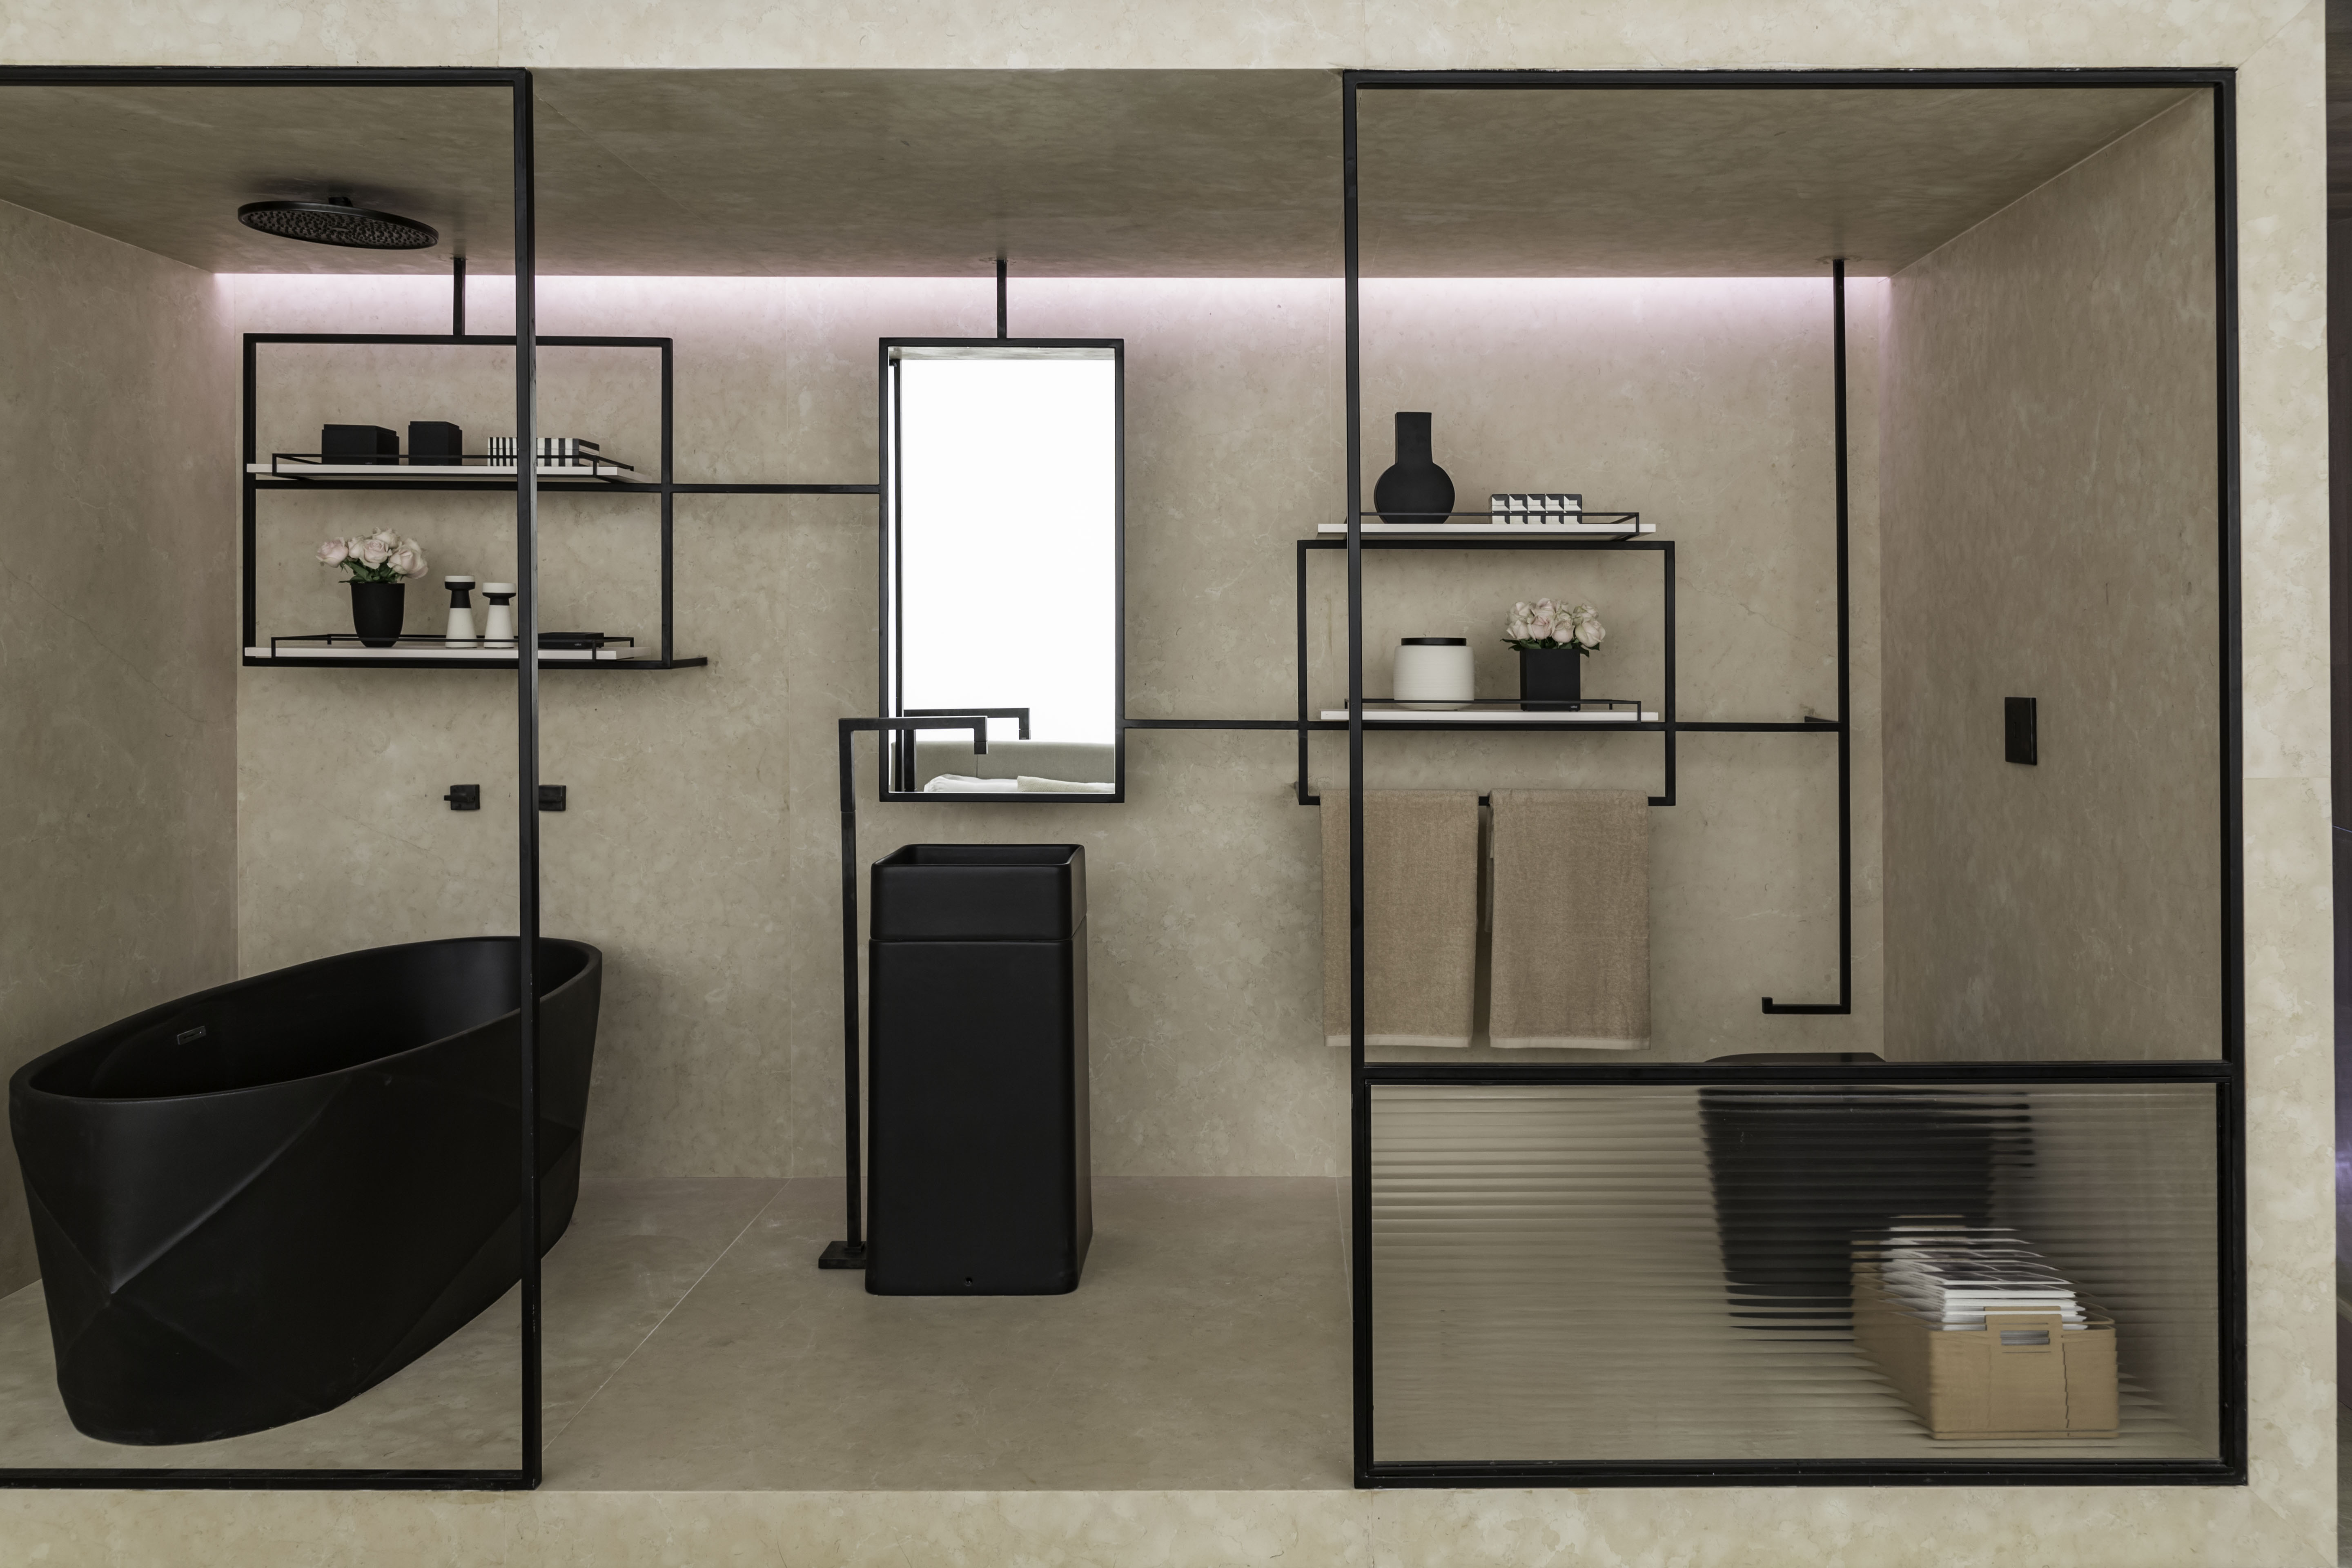 Com estética clean, o Loft Romanov, criado por Carolina Mauro, Daniela Frugiuele e Filipe Troncon, da Suite Arquitetos, deixa tudo a mostra no banheiro inserido em seu espaço.